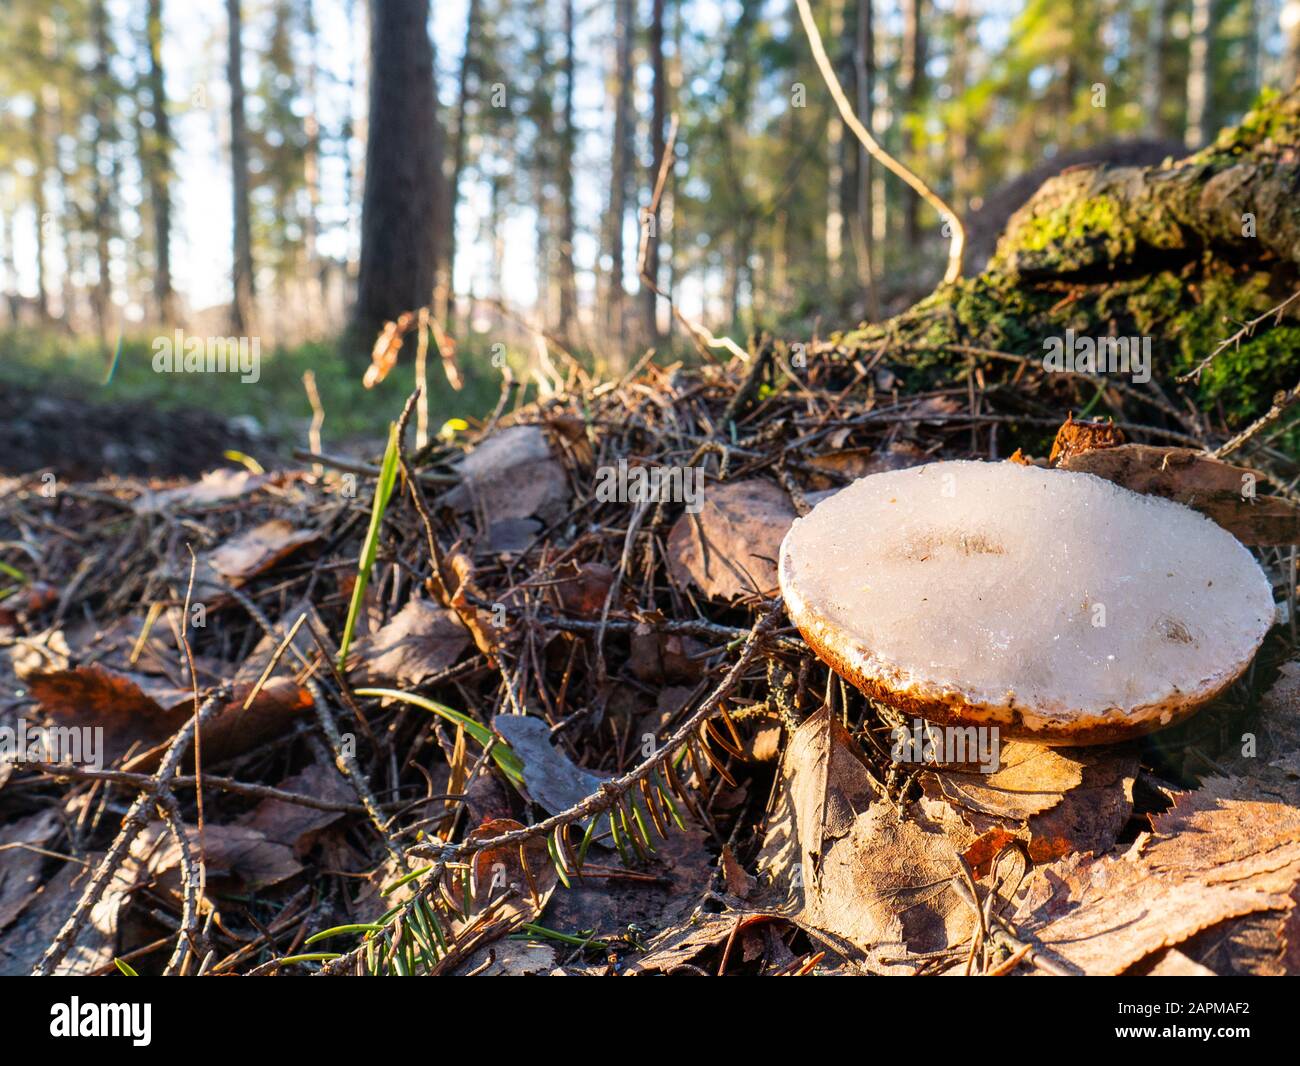 Small white mushroom amanita in green grass. Stock Photo